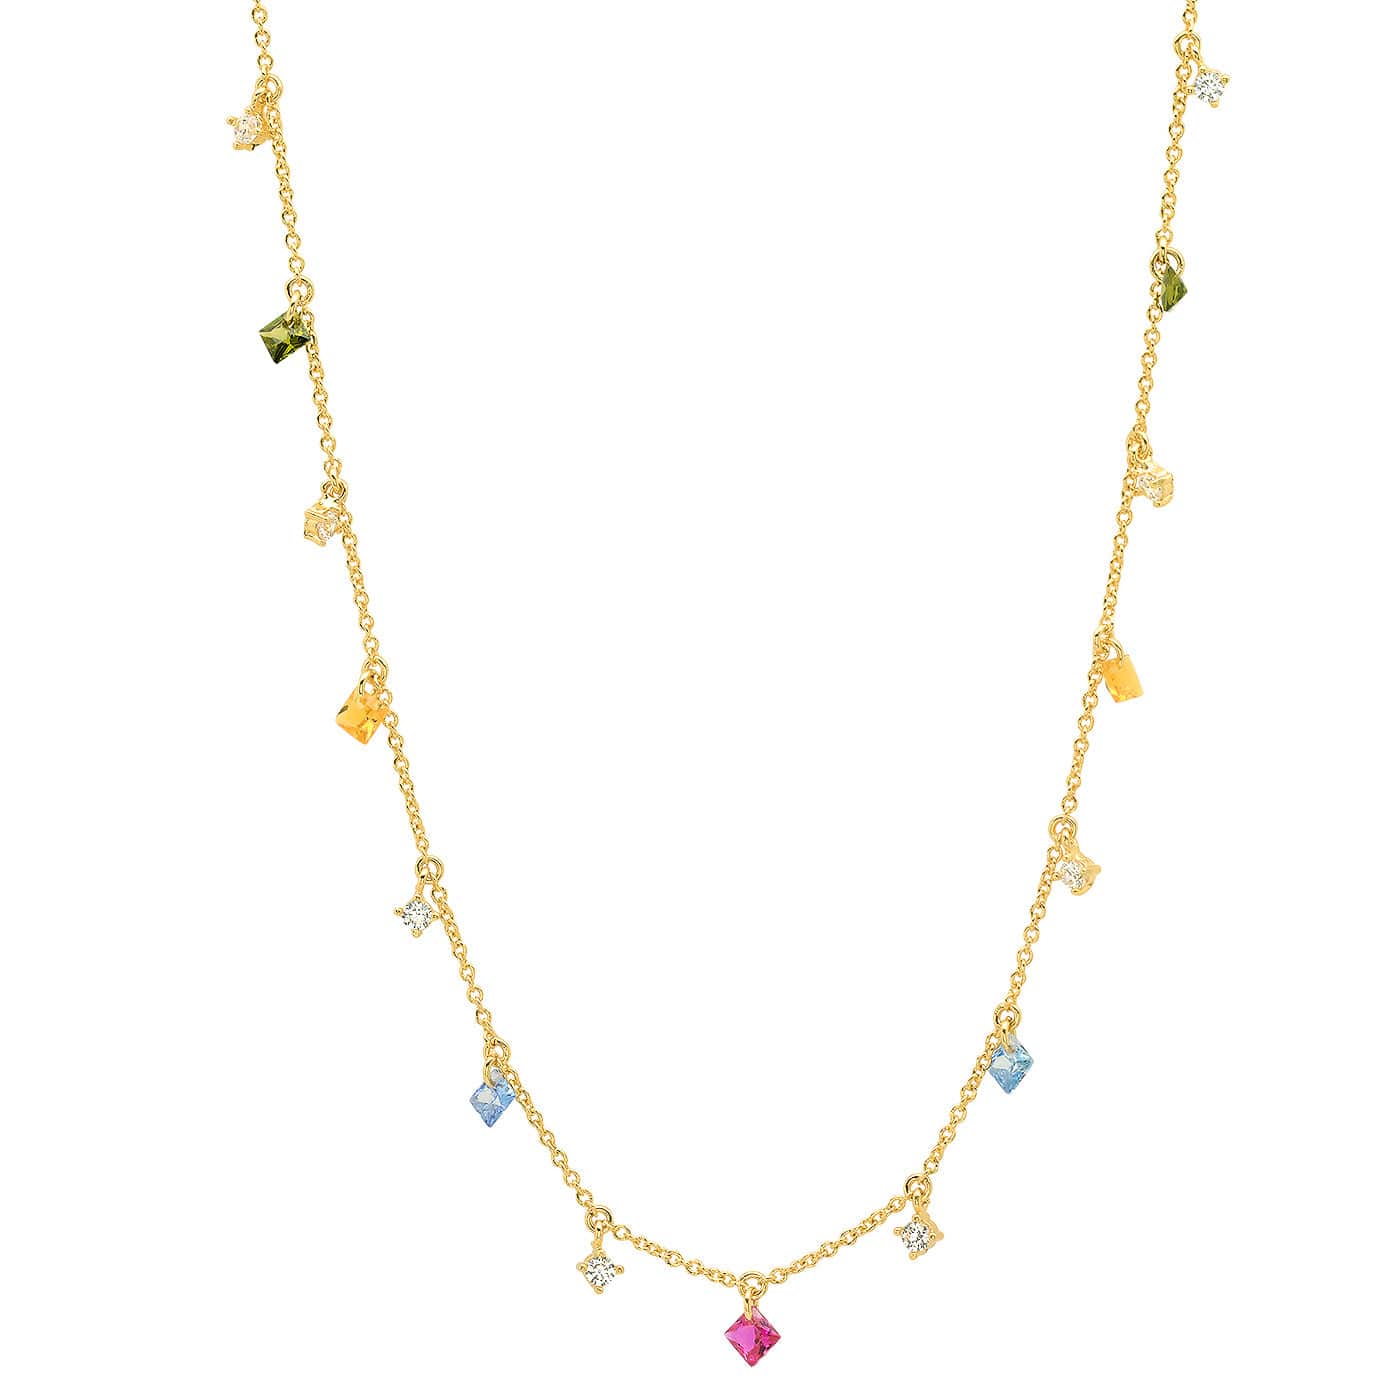 TAI JEWELRY Necklace Multi Colored Dangle Chain Necklace